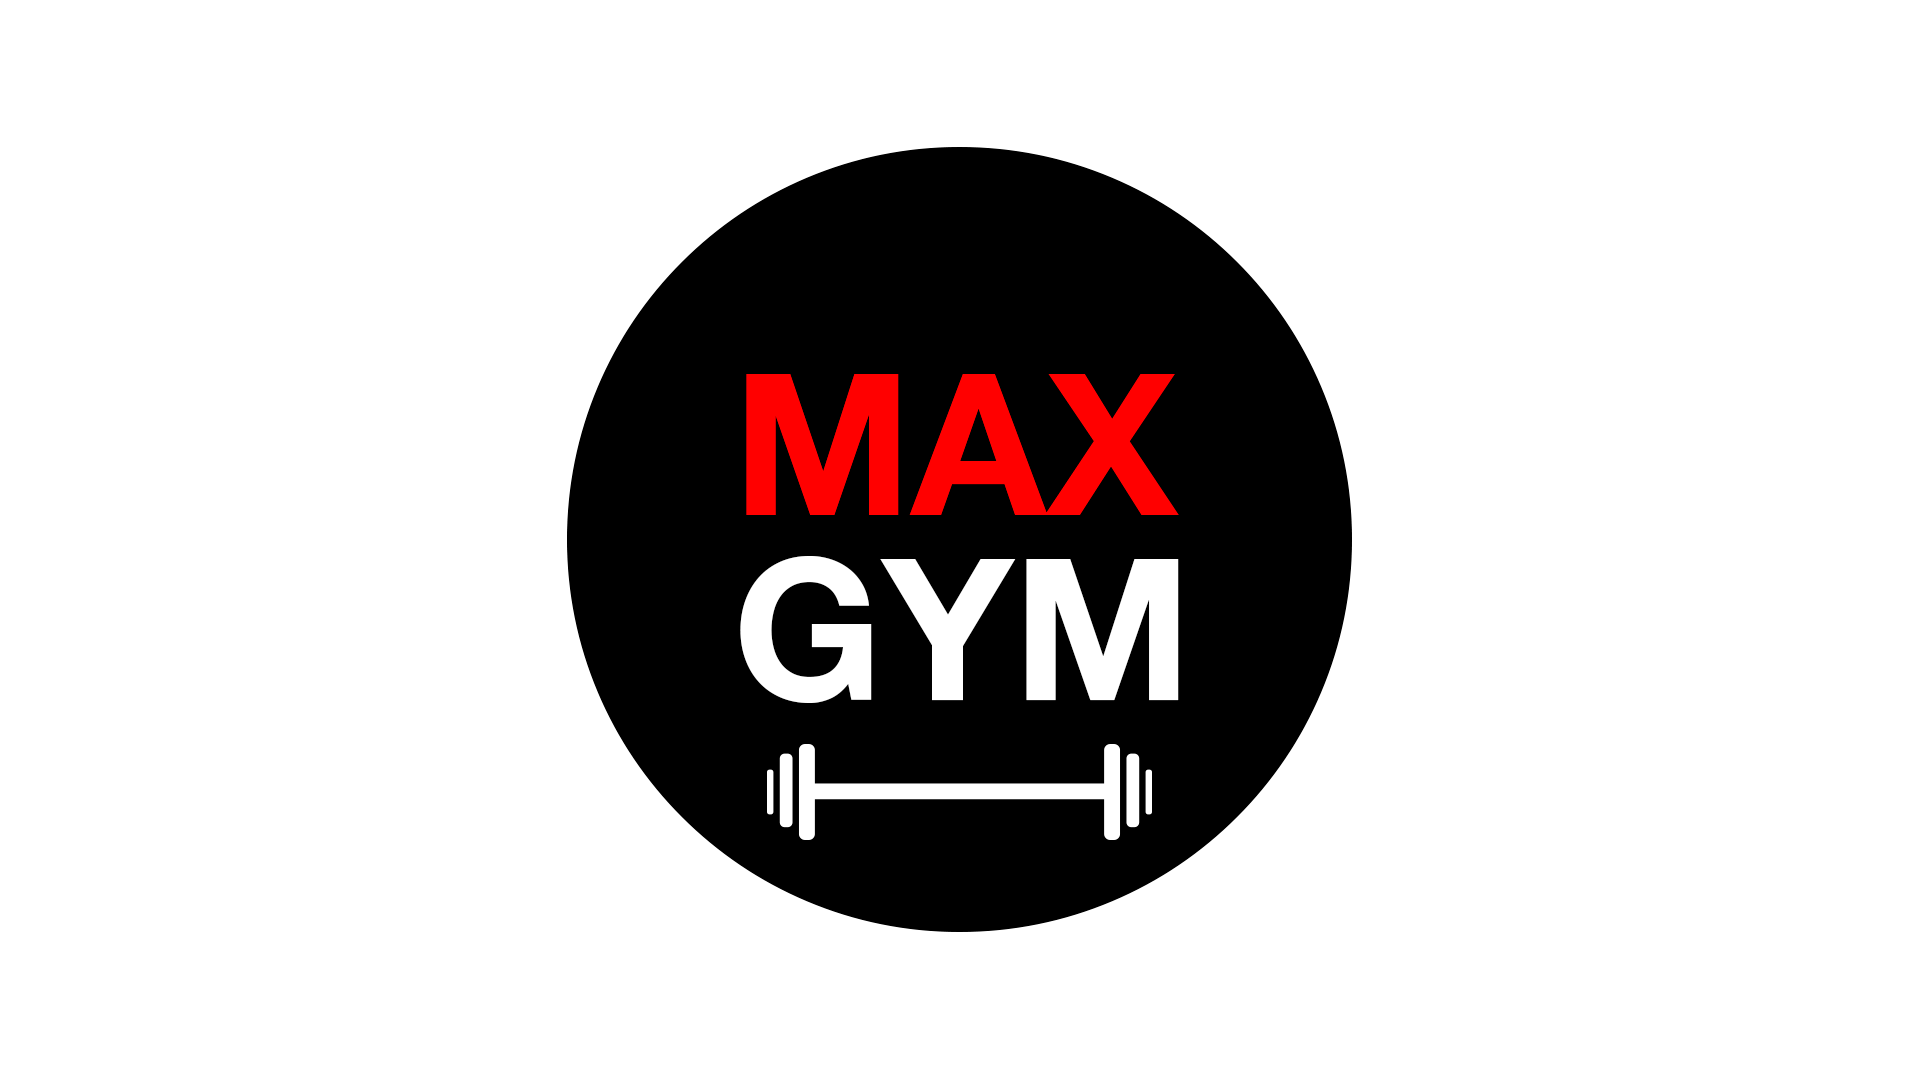 Max GYM - Que sea un buen hábito. #toalla #gym #maxgym